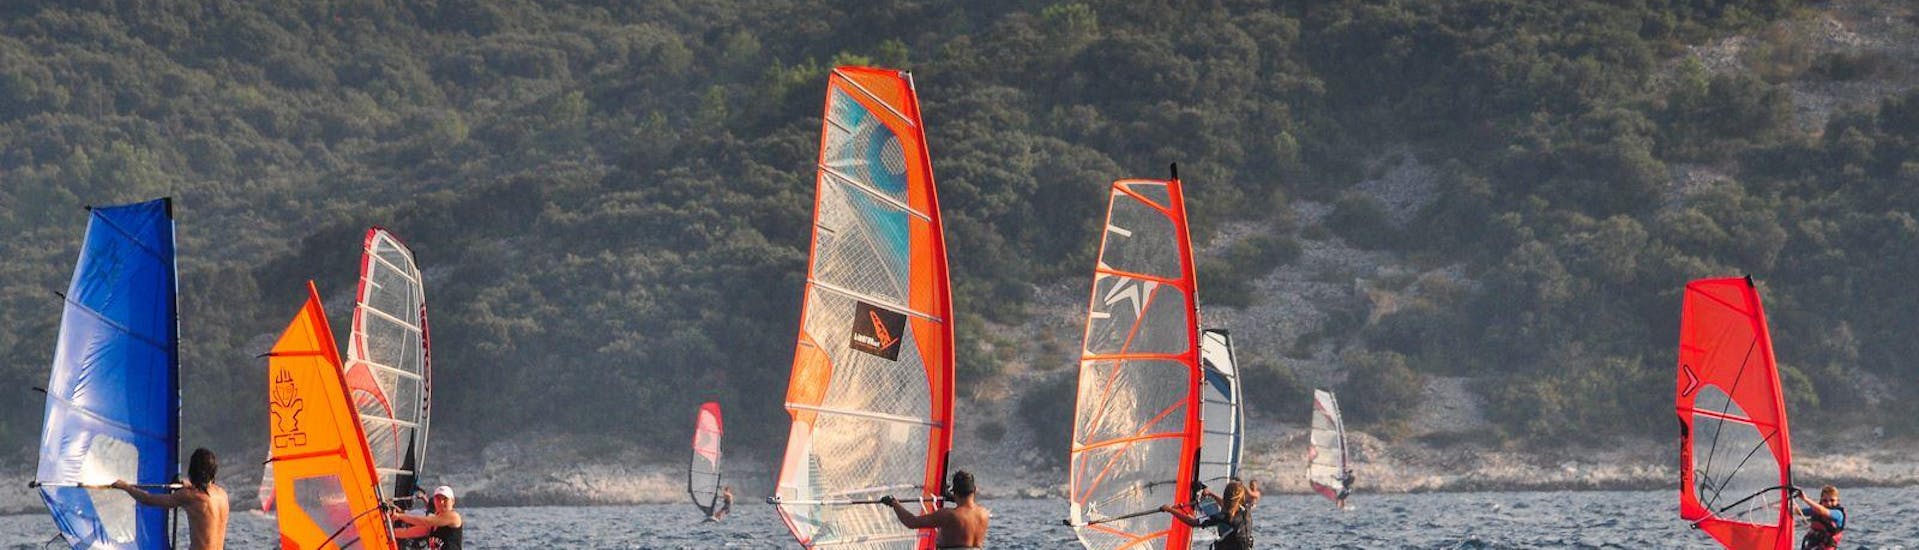 Lezioni di windsurf a Viganj da 13 anni.